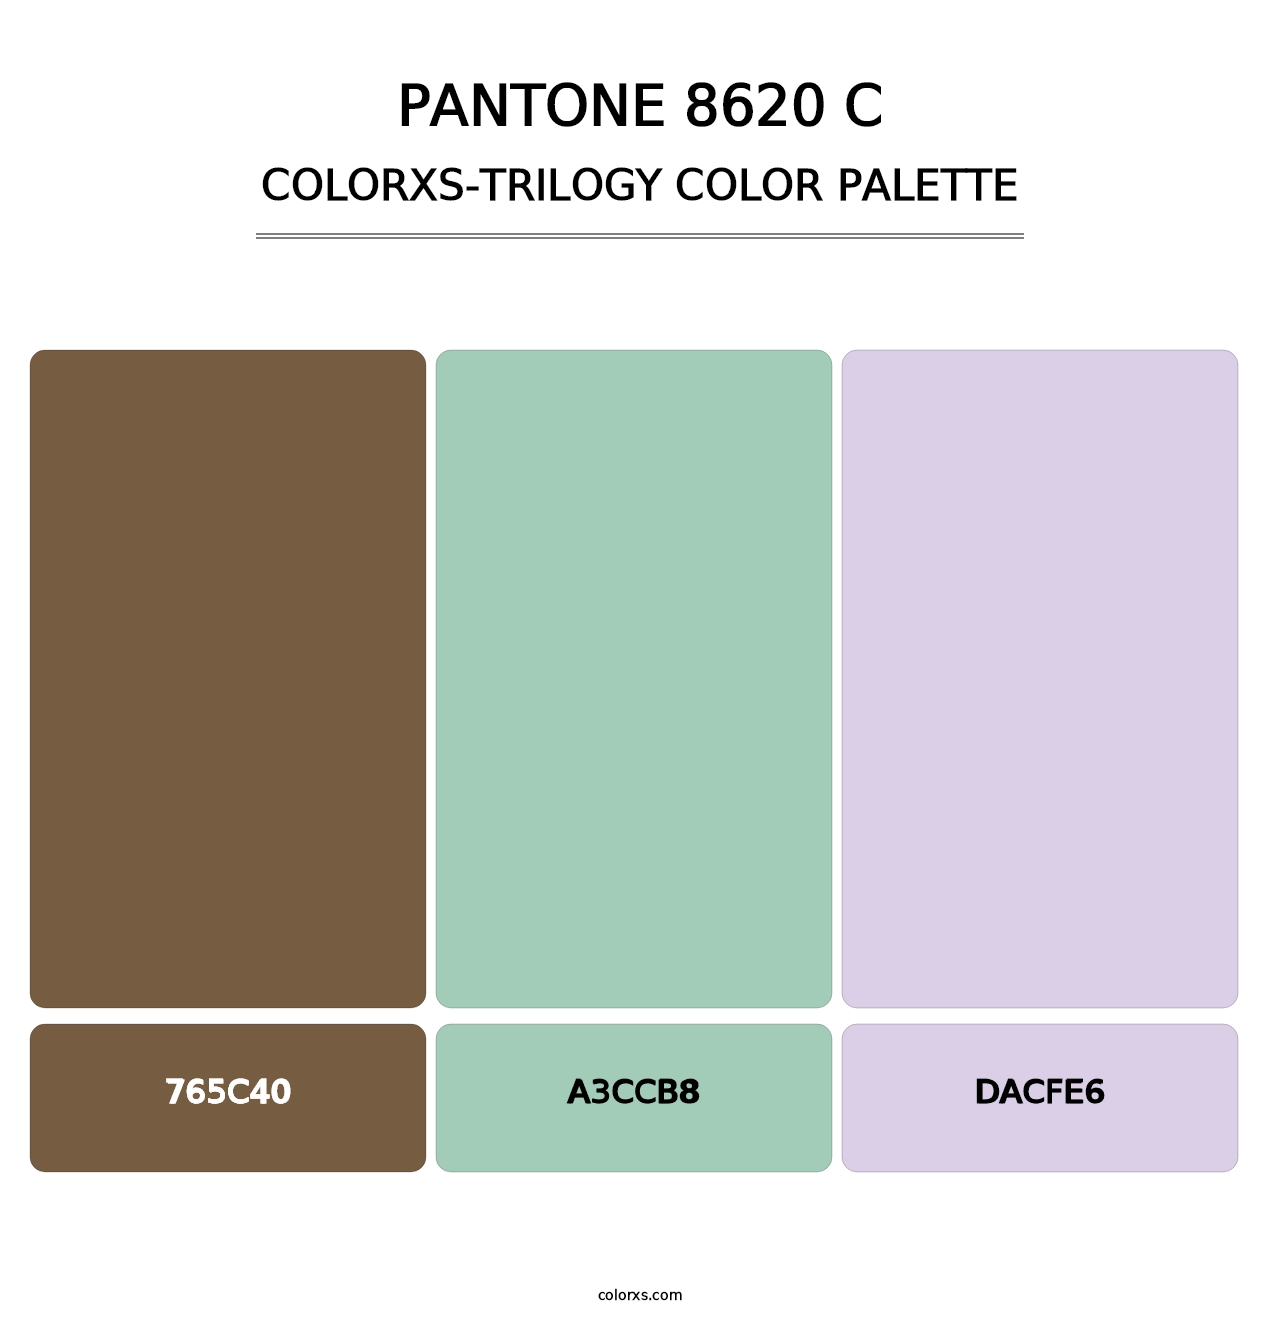 PANTONE 8620 C - Colorxs Trilogy Palette